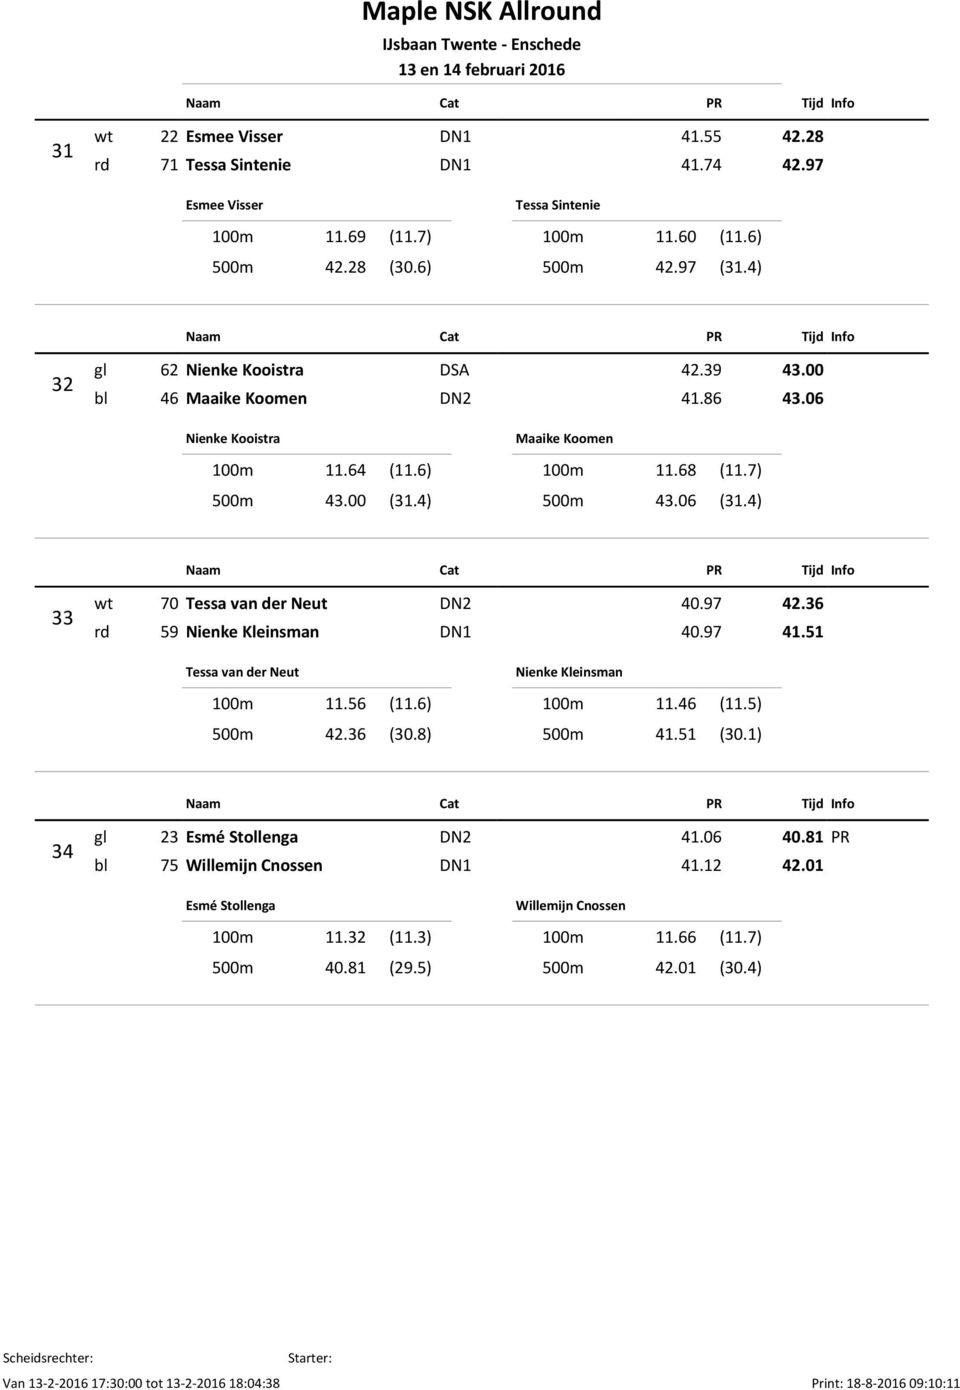 4) 33 wt 70 Tessa van der Neut DN2 40.97 42.36 rd 59 Nienke Kleinsman DN1 40.97 41.51 Tessa van der Neut 100m 11.56 (11.6) 500m 42.36 (30.8) Nienke Kleinsman 100m 11.46 (11.5) 500m 41.51 (30.